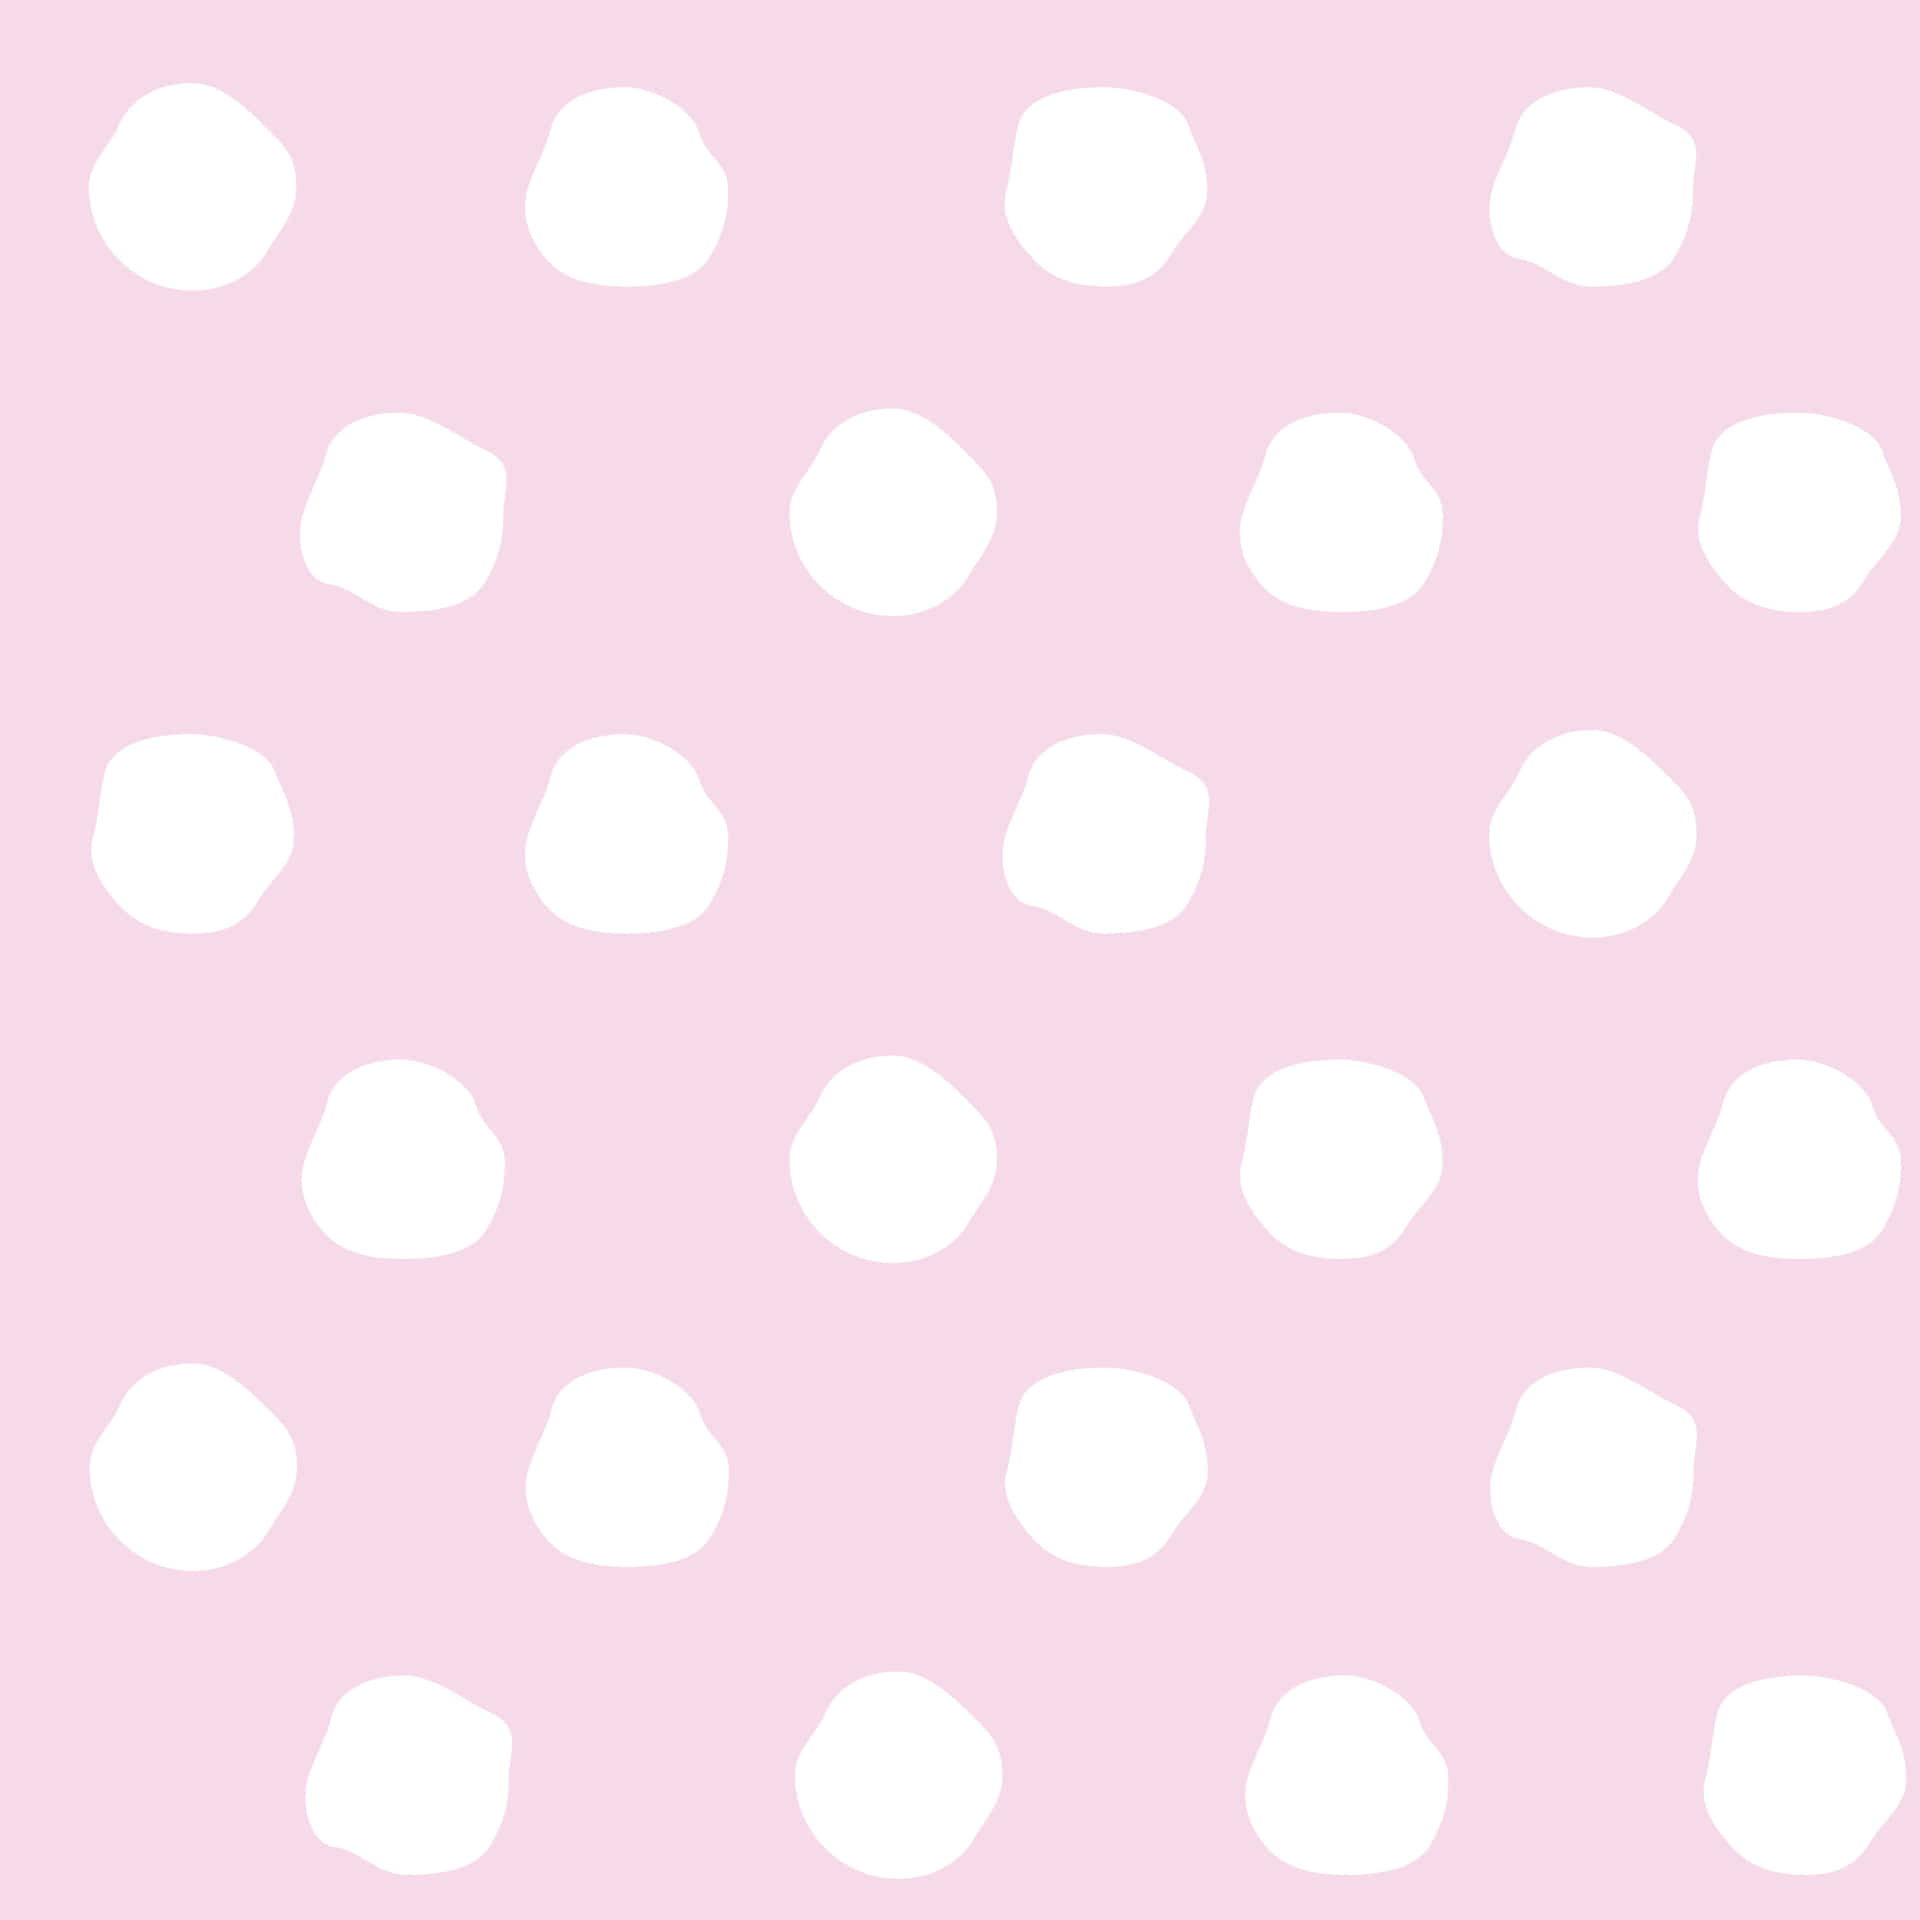 Nyd det dristige look af en klassisk retro mønster med dette smukke Pink og Hvide Polka Dot væg kunst. Wallpaper